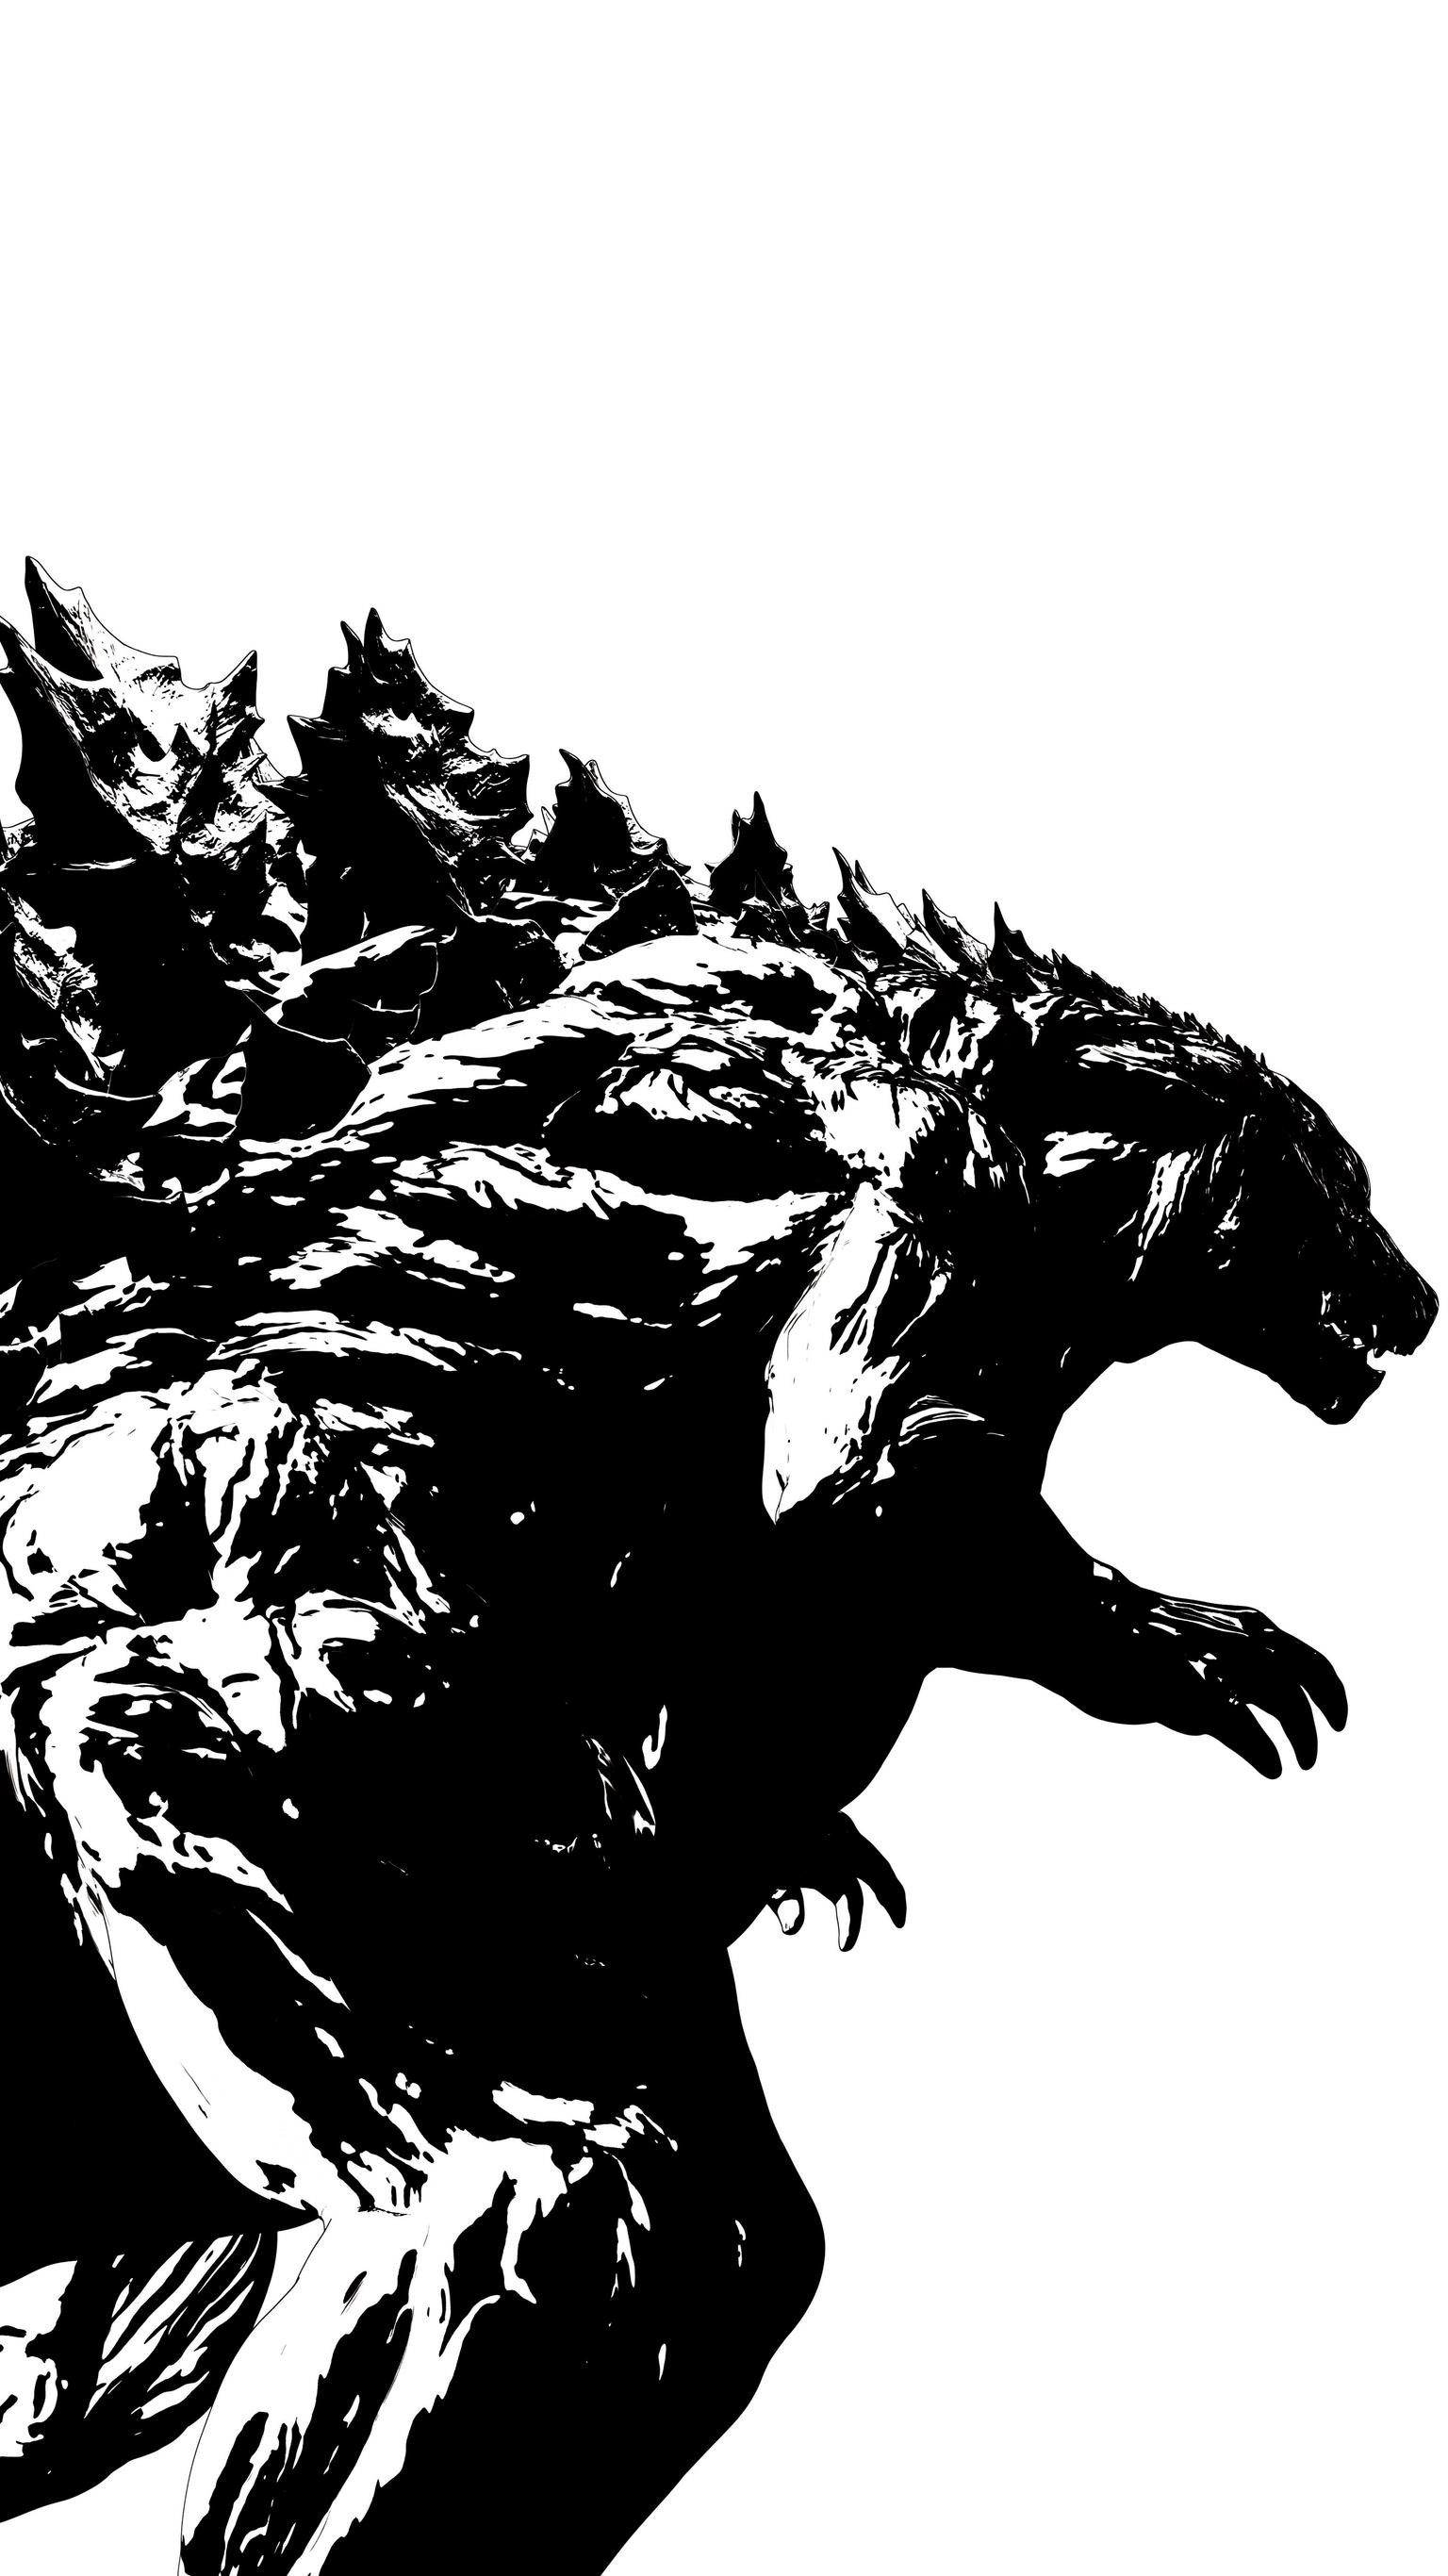 godzilla iphone wallpaper,werwolf,erfundener charakter,mythische kreatur,illustration,grizzlybär